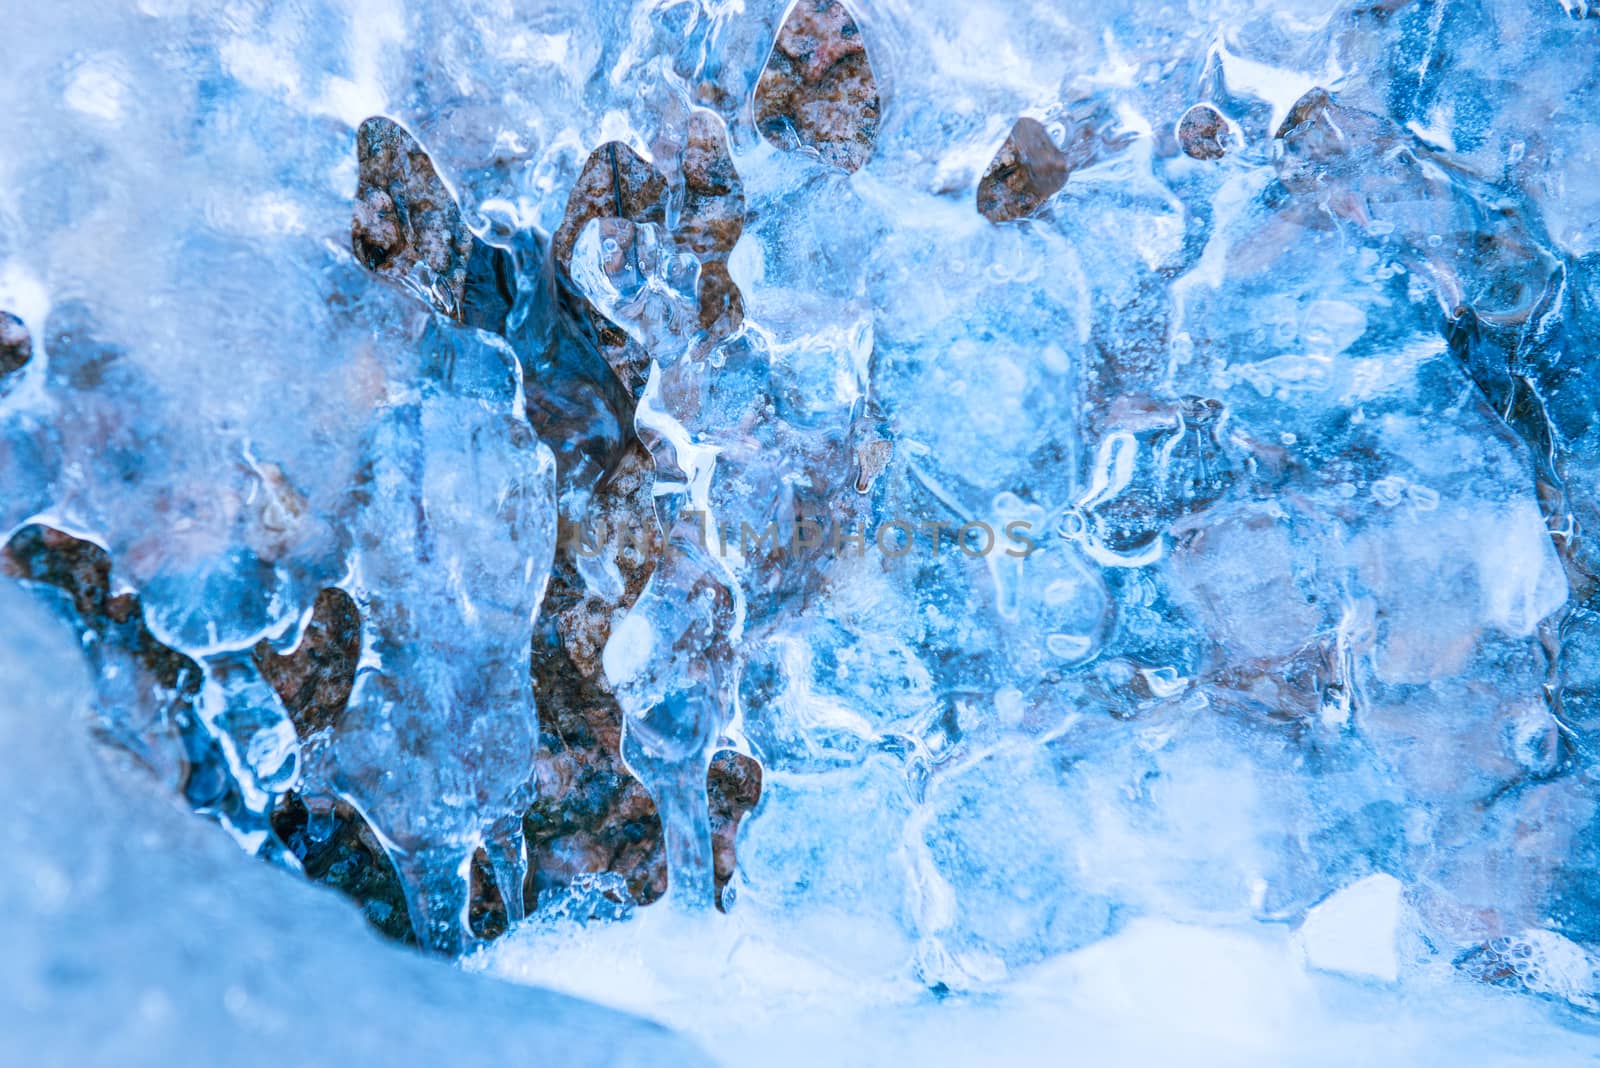 Frozen waterfall in blue ice by vapi